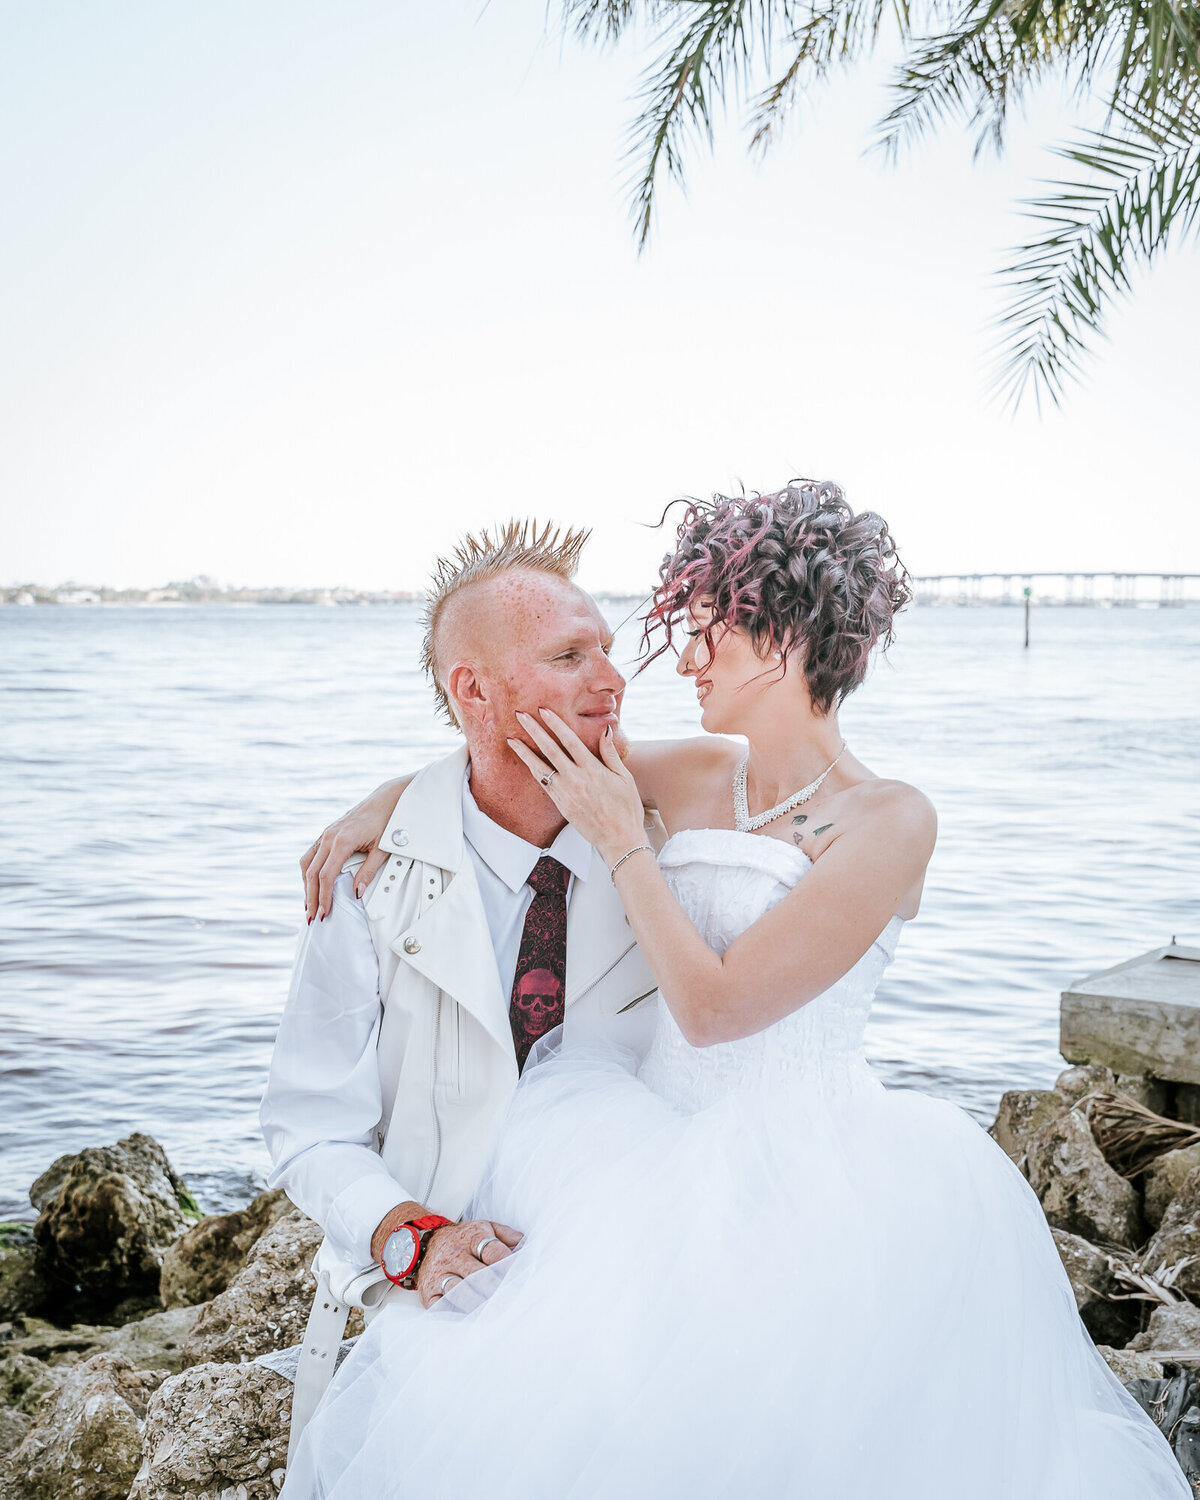 Southwest Florida wedding photographers - Fort Myers Wedding Photographer -17